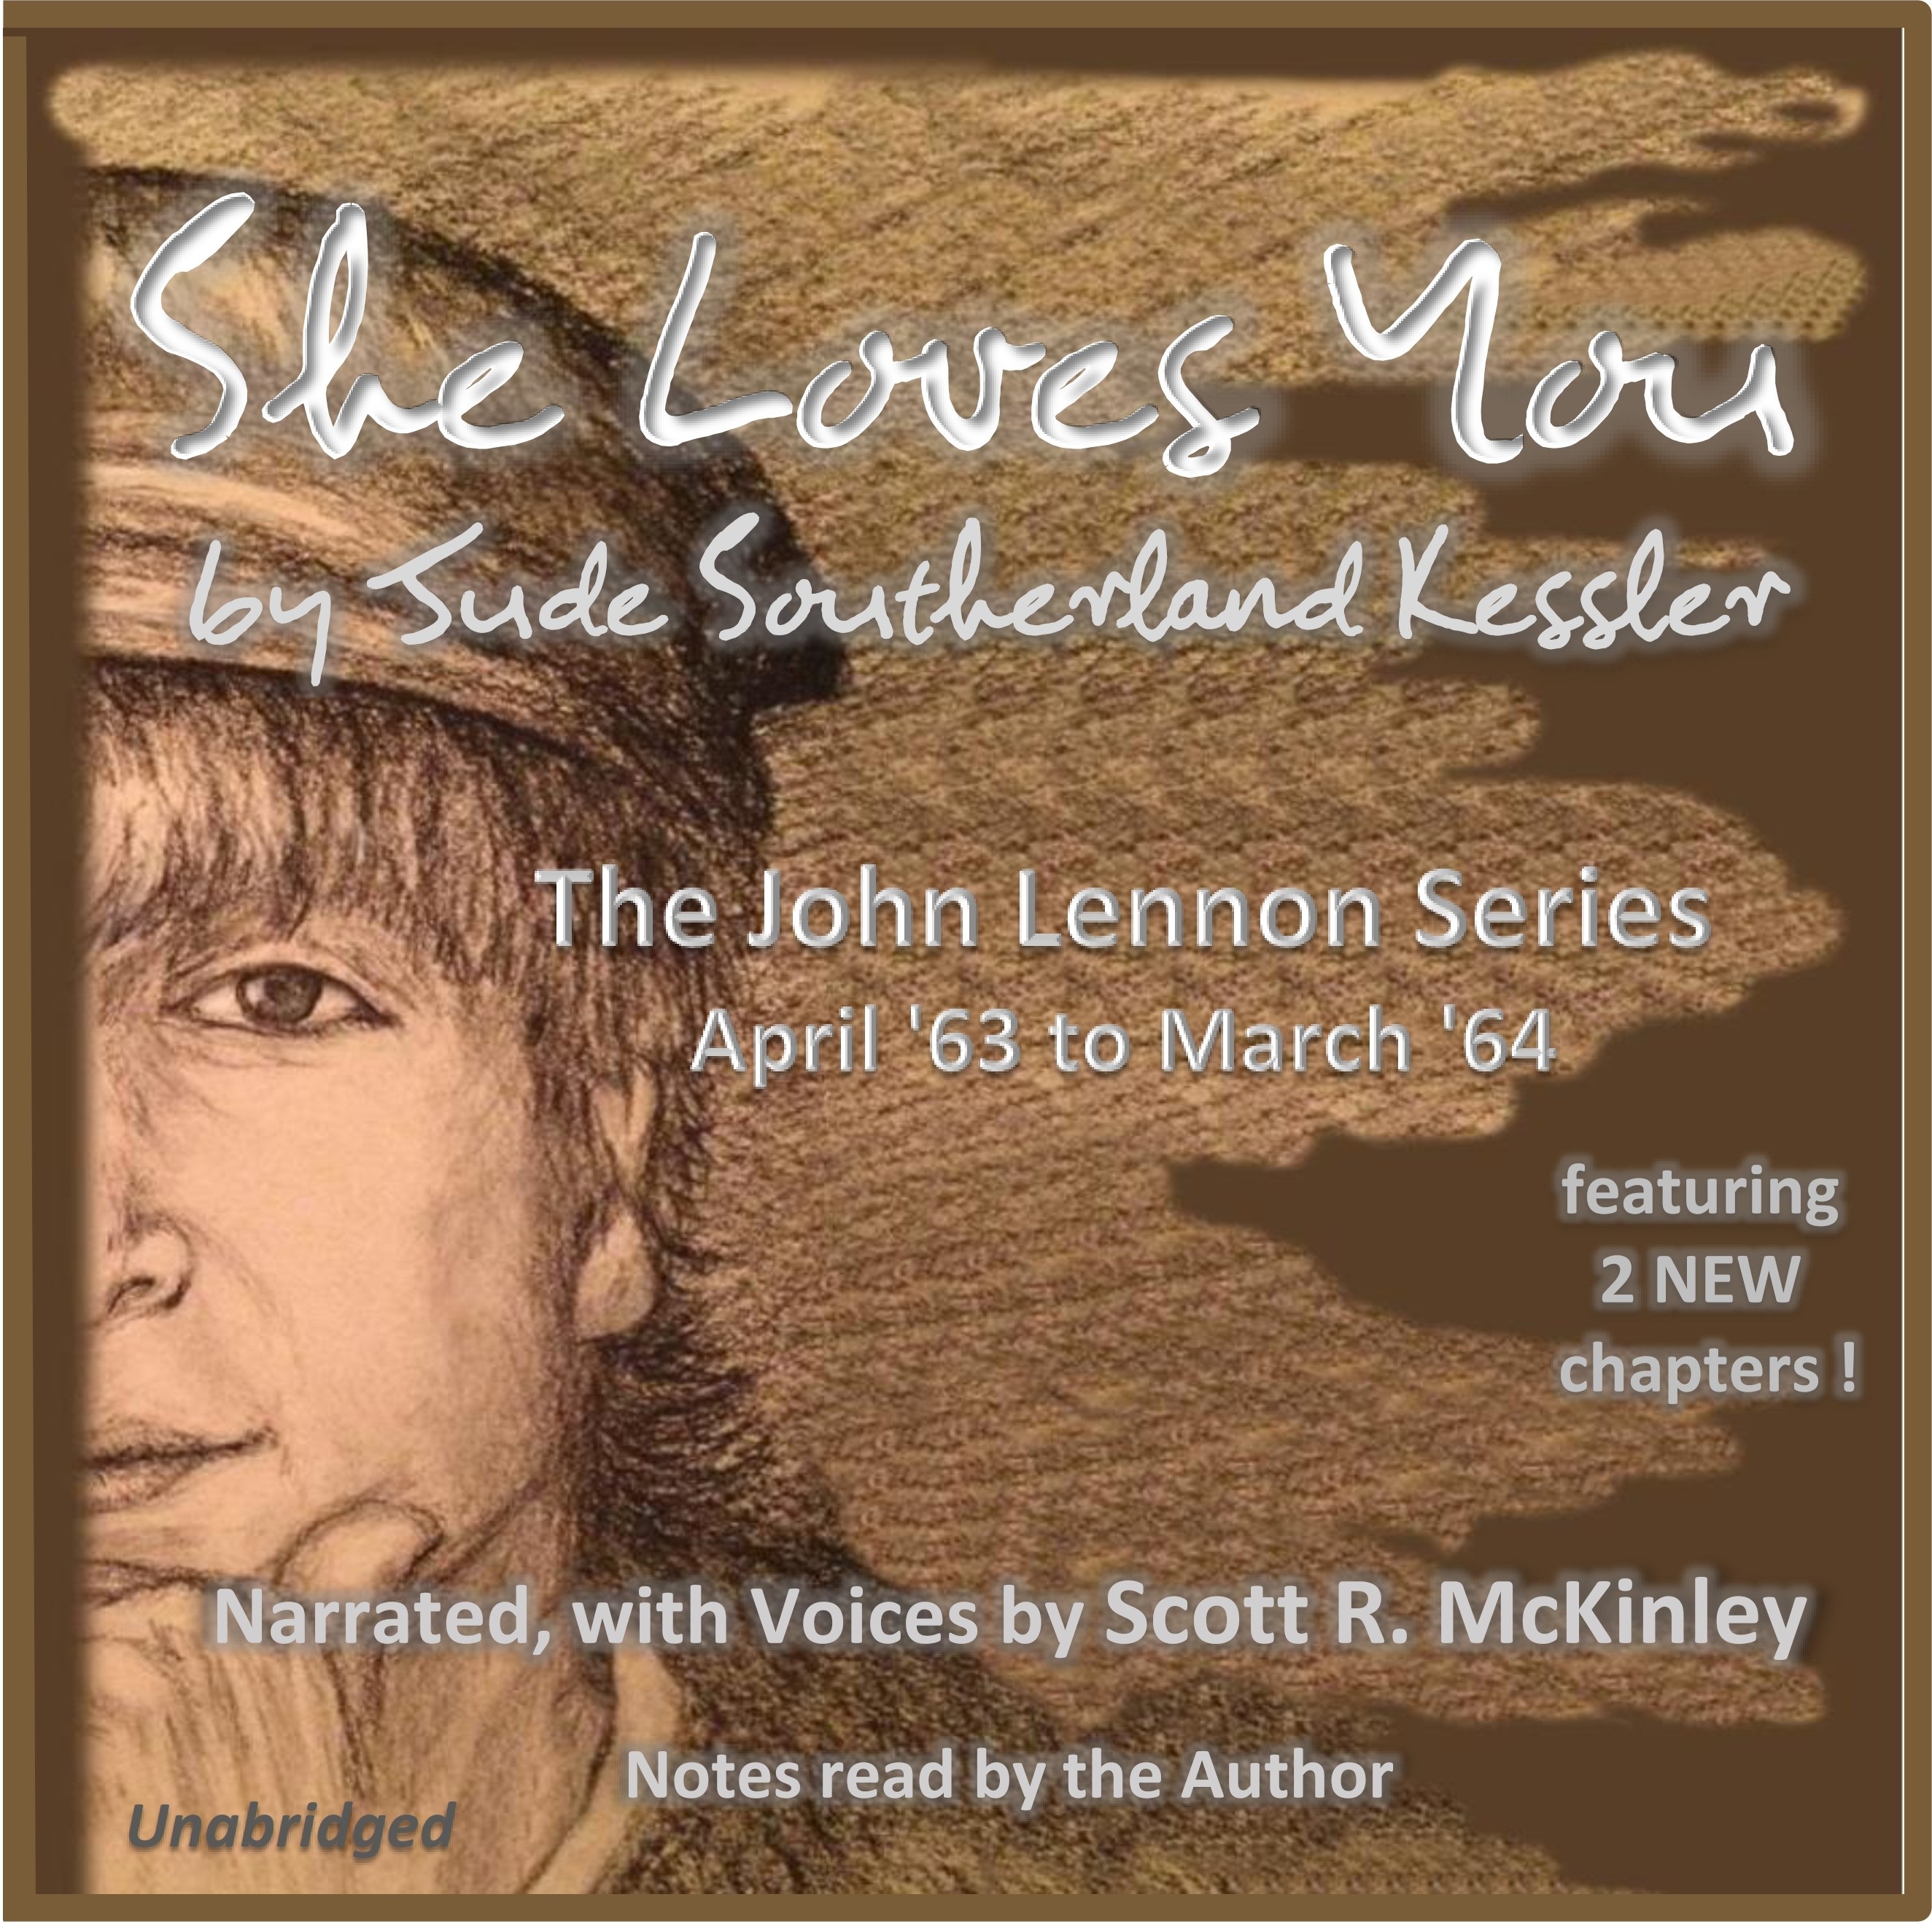 John Lennon Series Audiobook